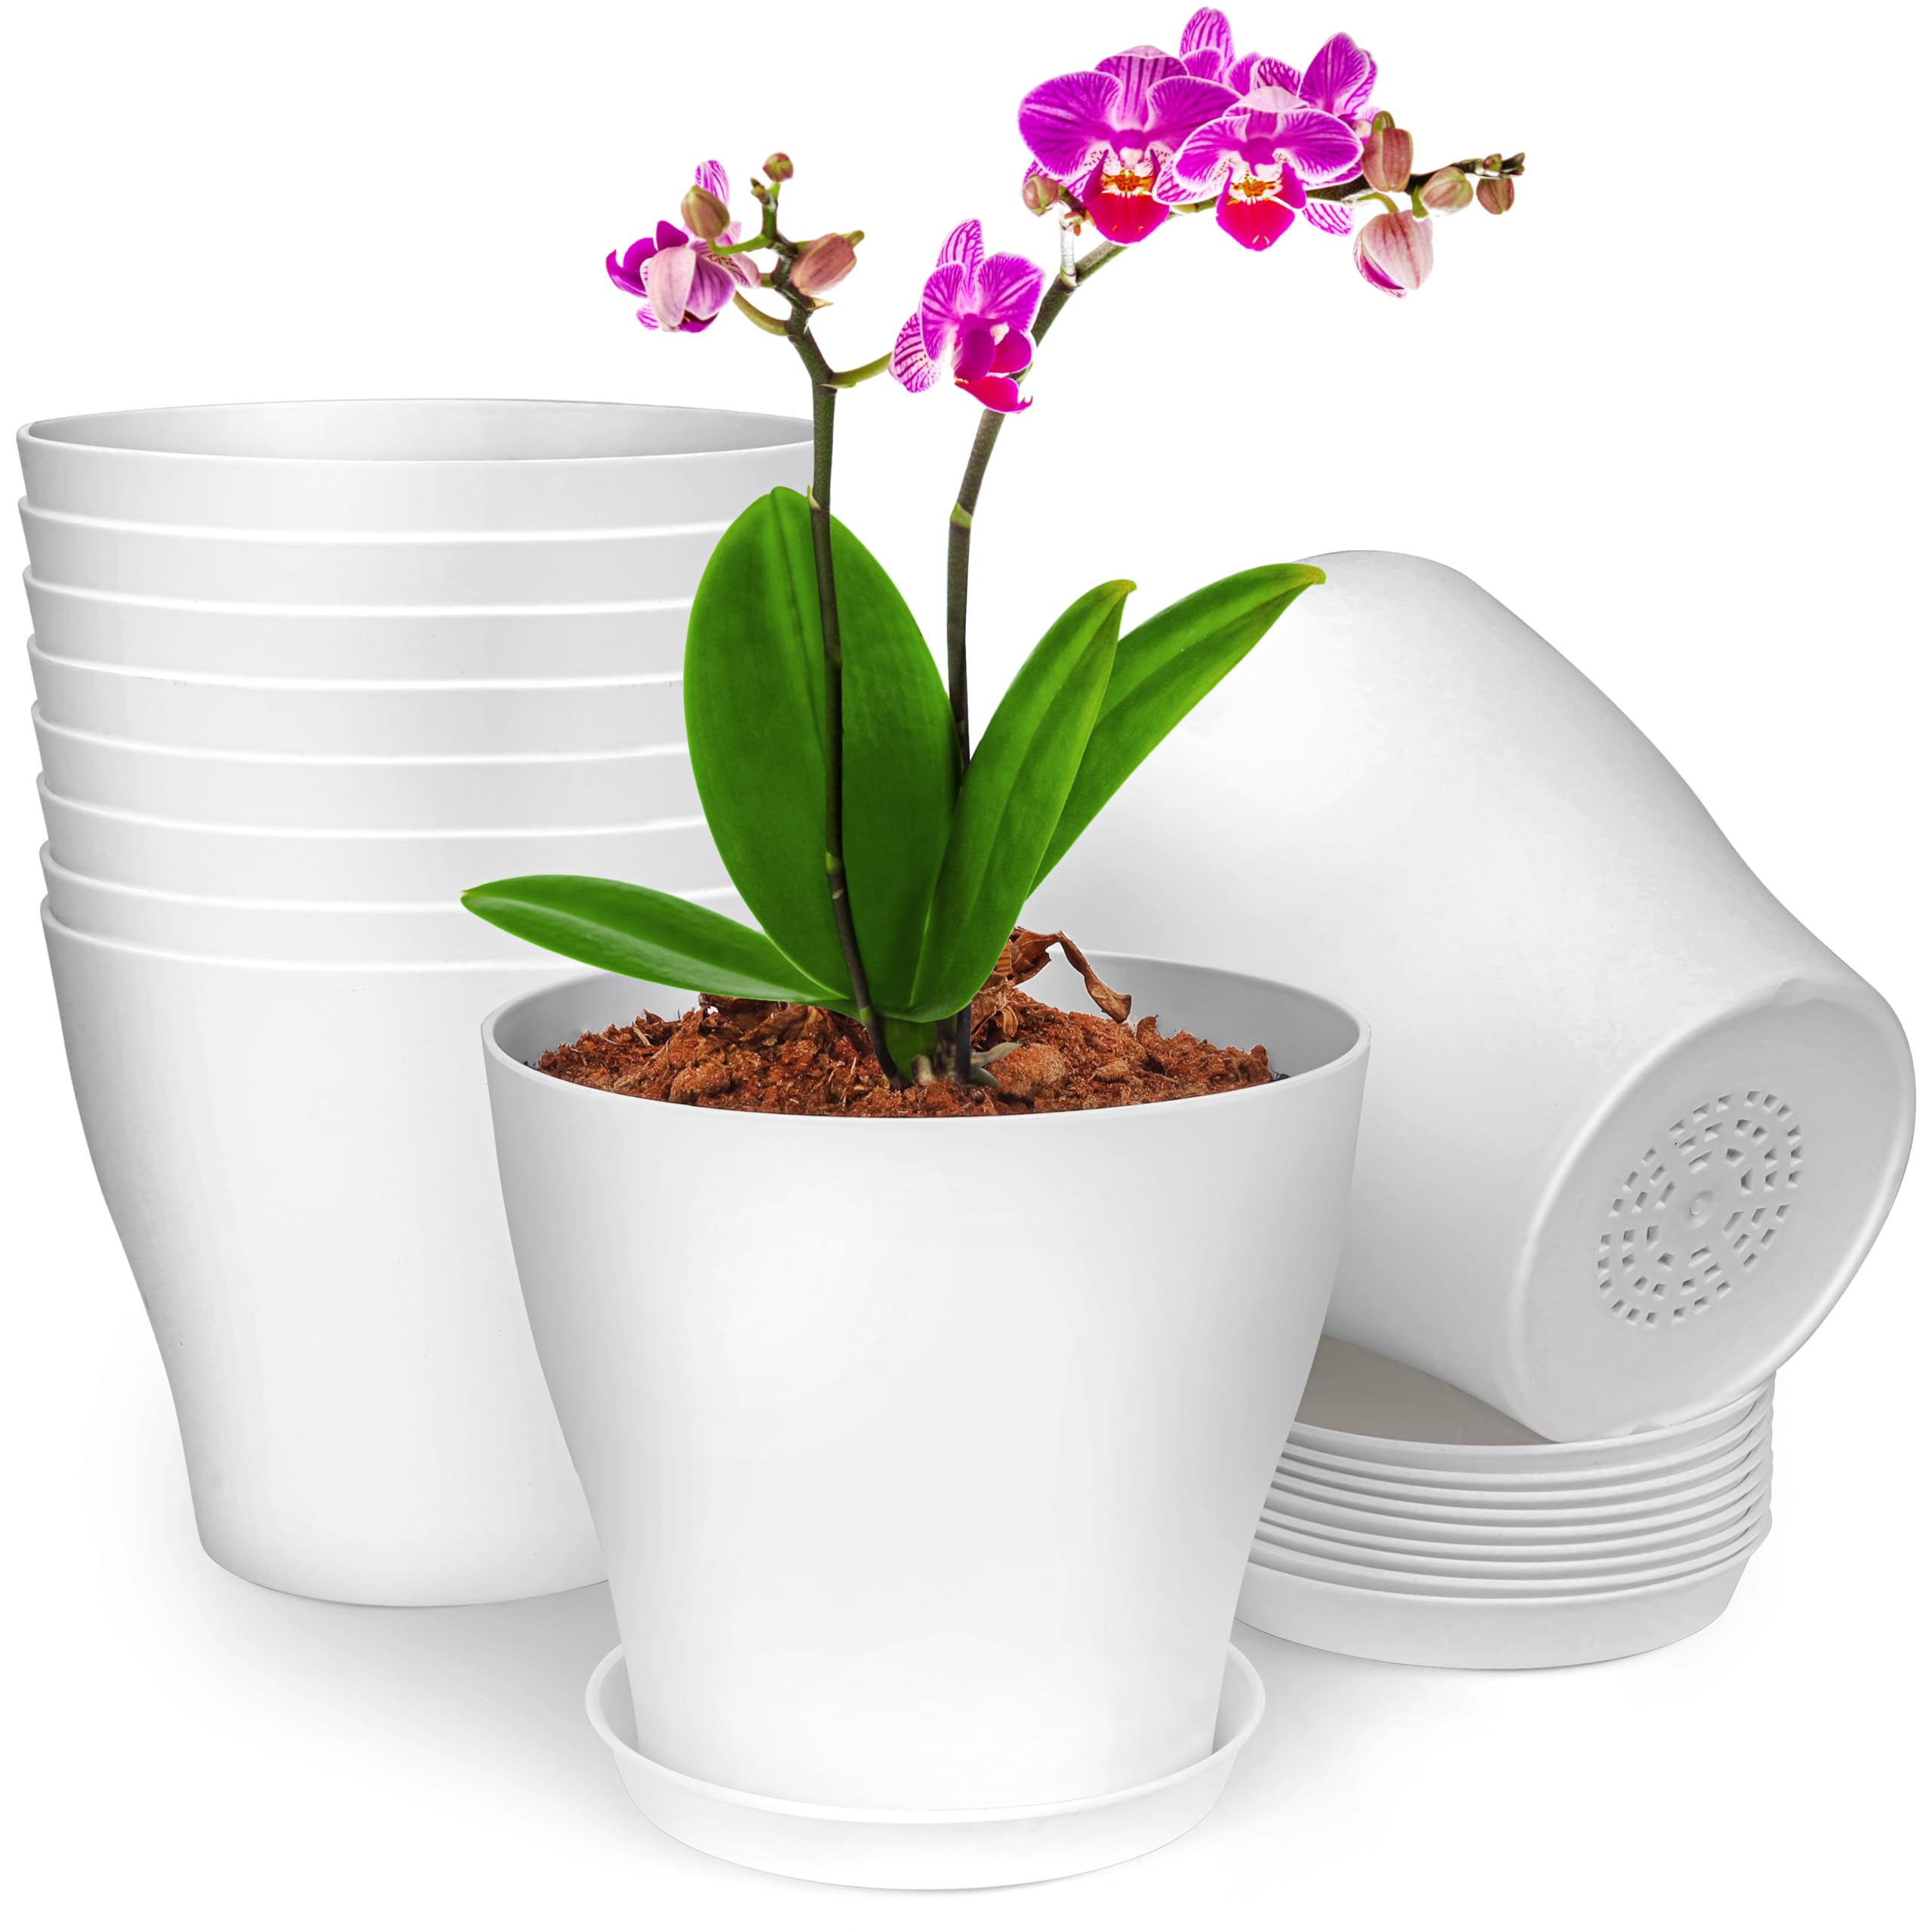 BELLE VOUS 10 Stück 13,5 cm Weiße Kunststoff Blumentopf mit Untersetzer - Großer Blumentopf mit Drainagelöchern - Blumentöpfe für Zimmerpflanzen & Balkon Sukkulenten Kaktus